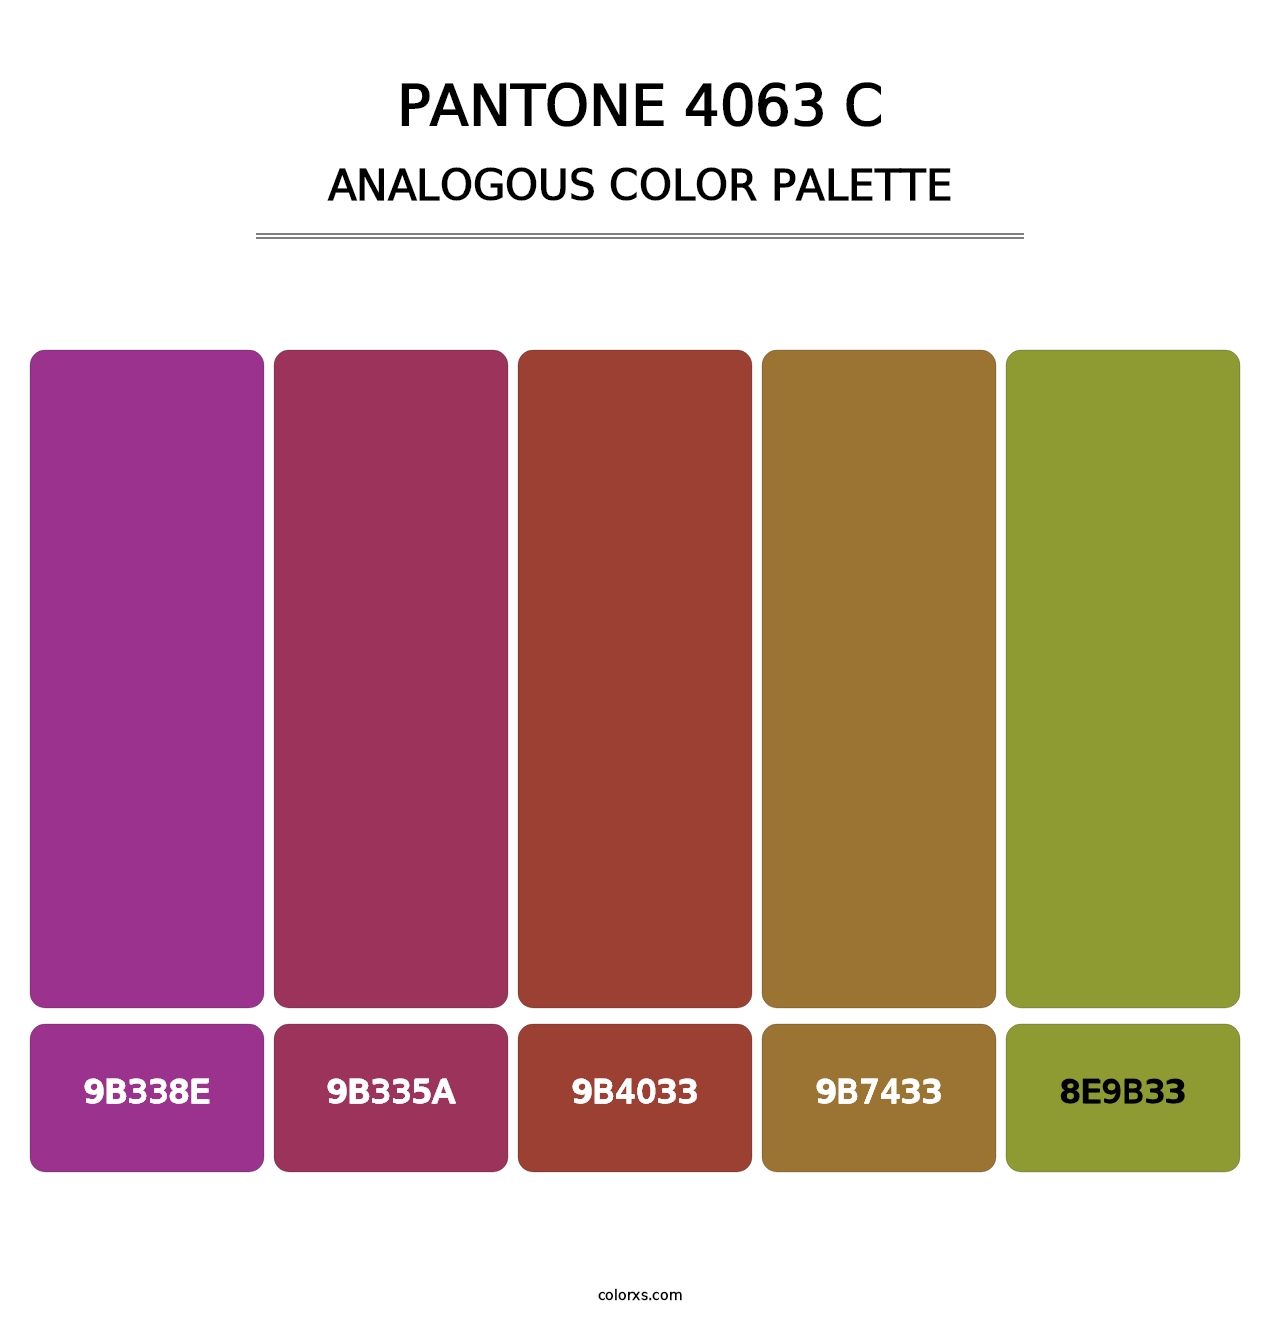 PANTONE 4063 C - Analogous Color Palette